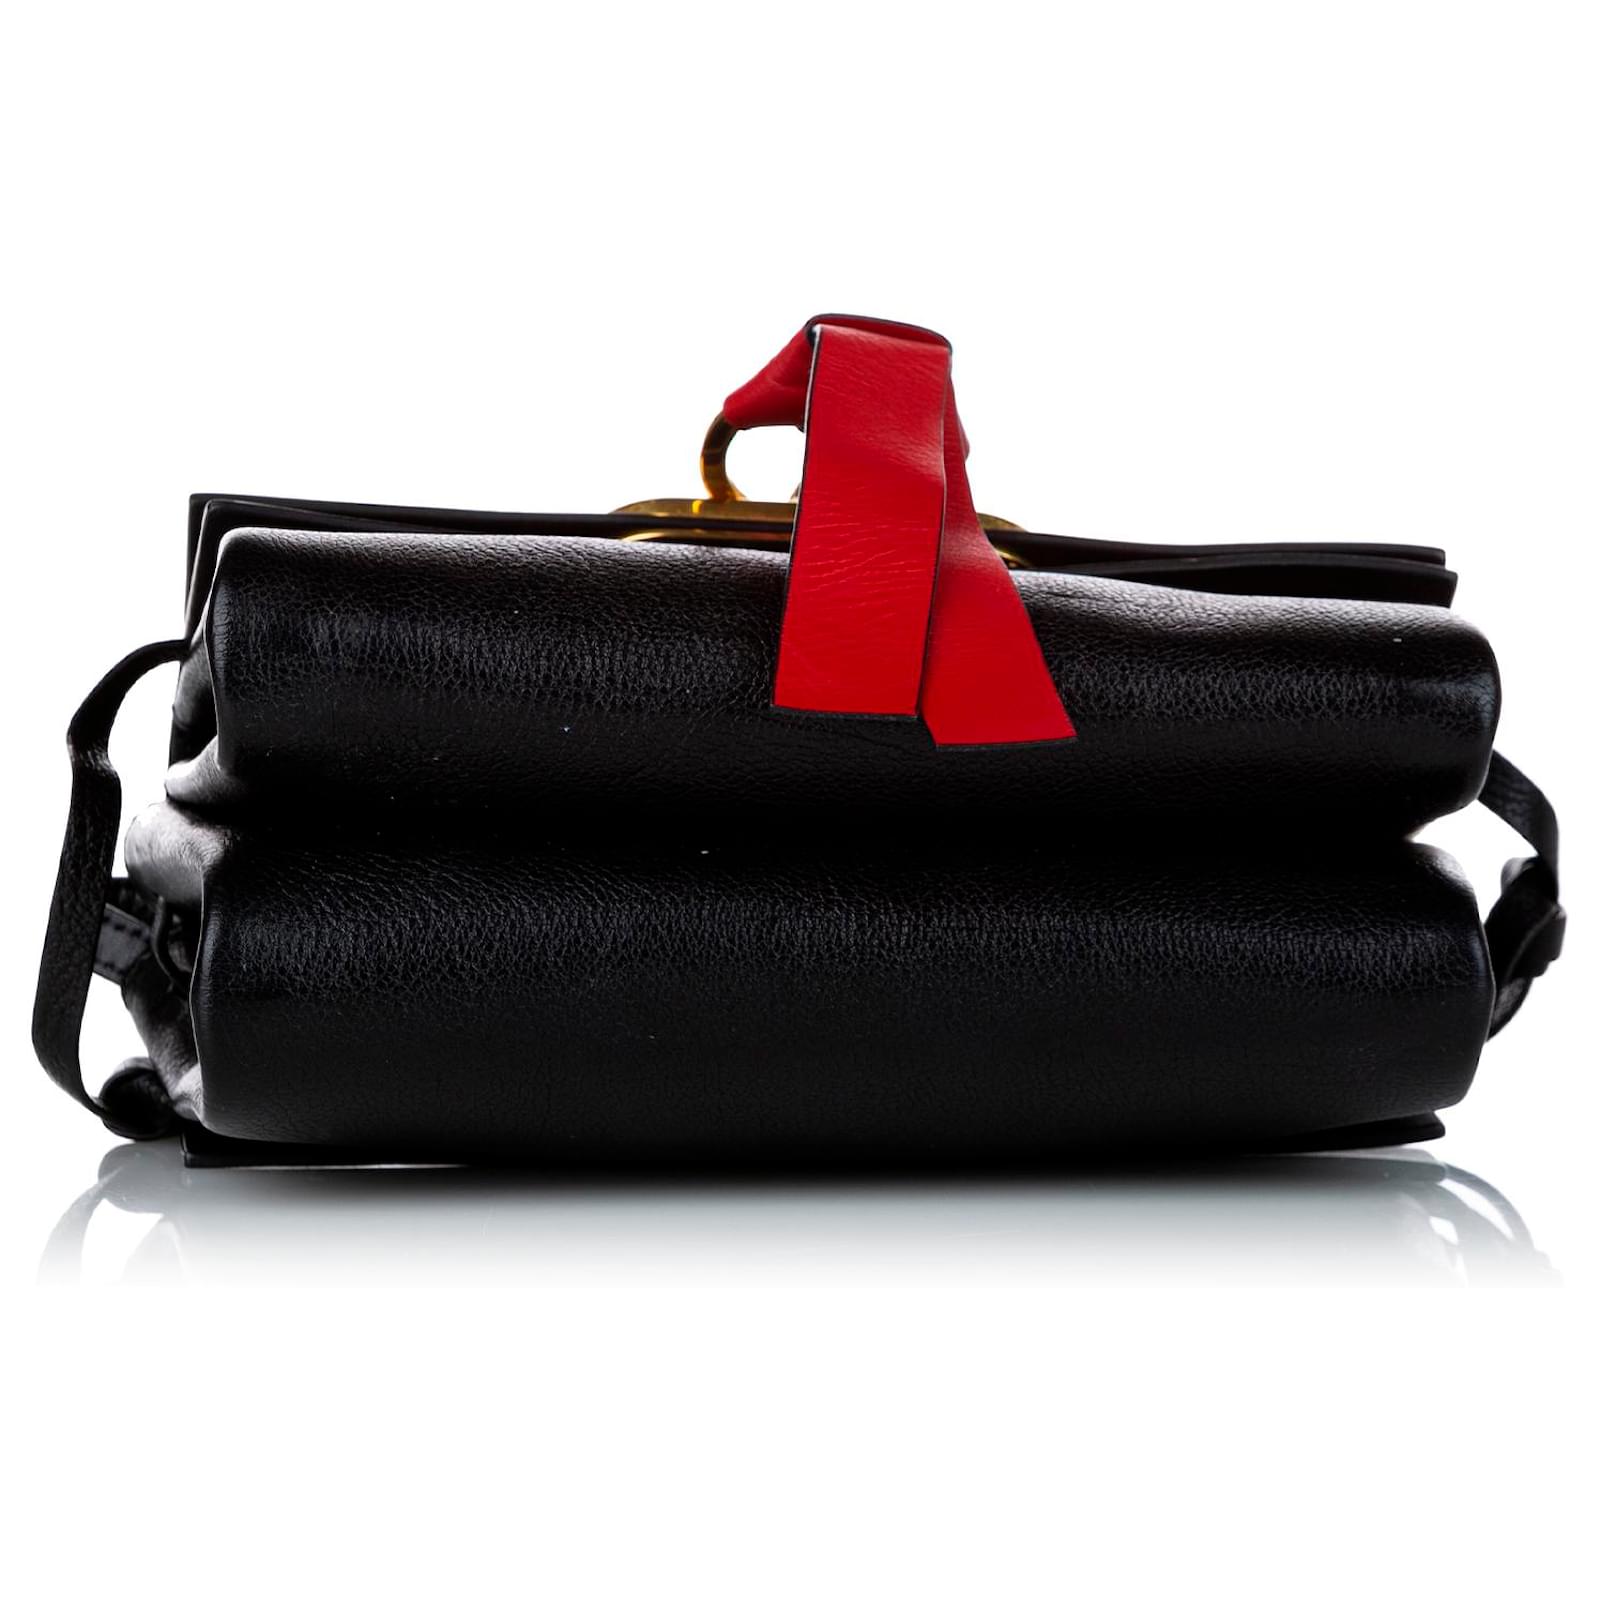 Valentino Garavani Black VRing Leather Crossbody Bag Red Pony